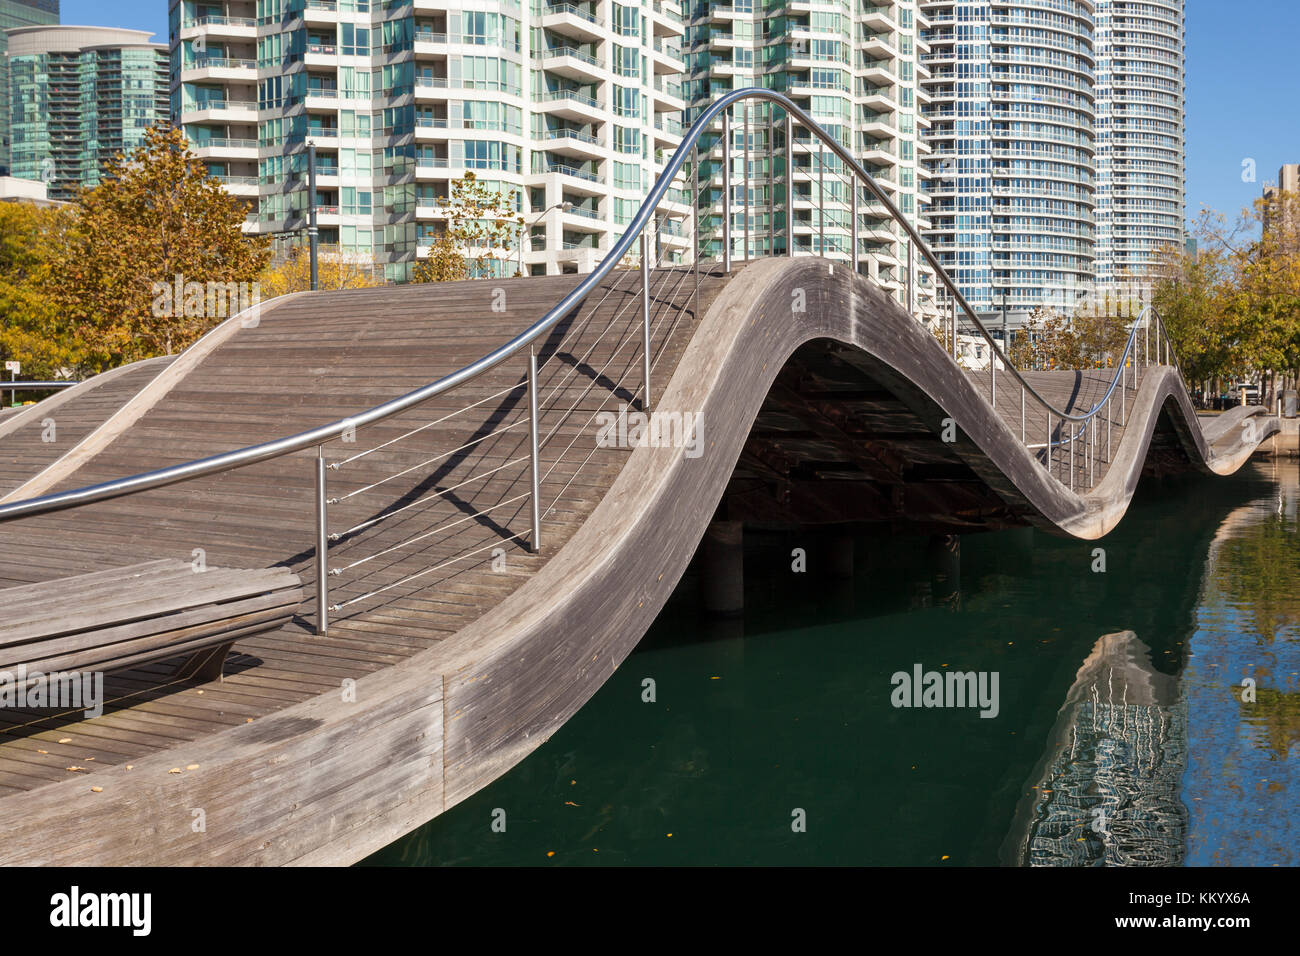 Toronto, Canada - Ott 20, 2017: il toronto waterfront wavedecks - una forma d'onda ponte pedonale al waterfront promenade a Toronto in Canada Foto Stock